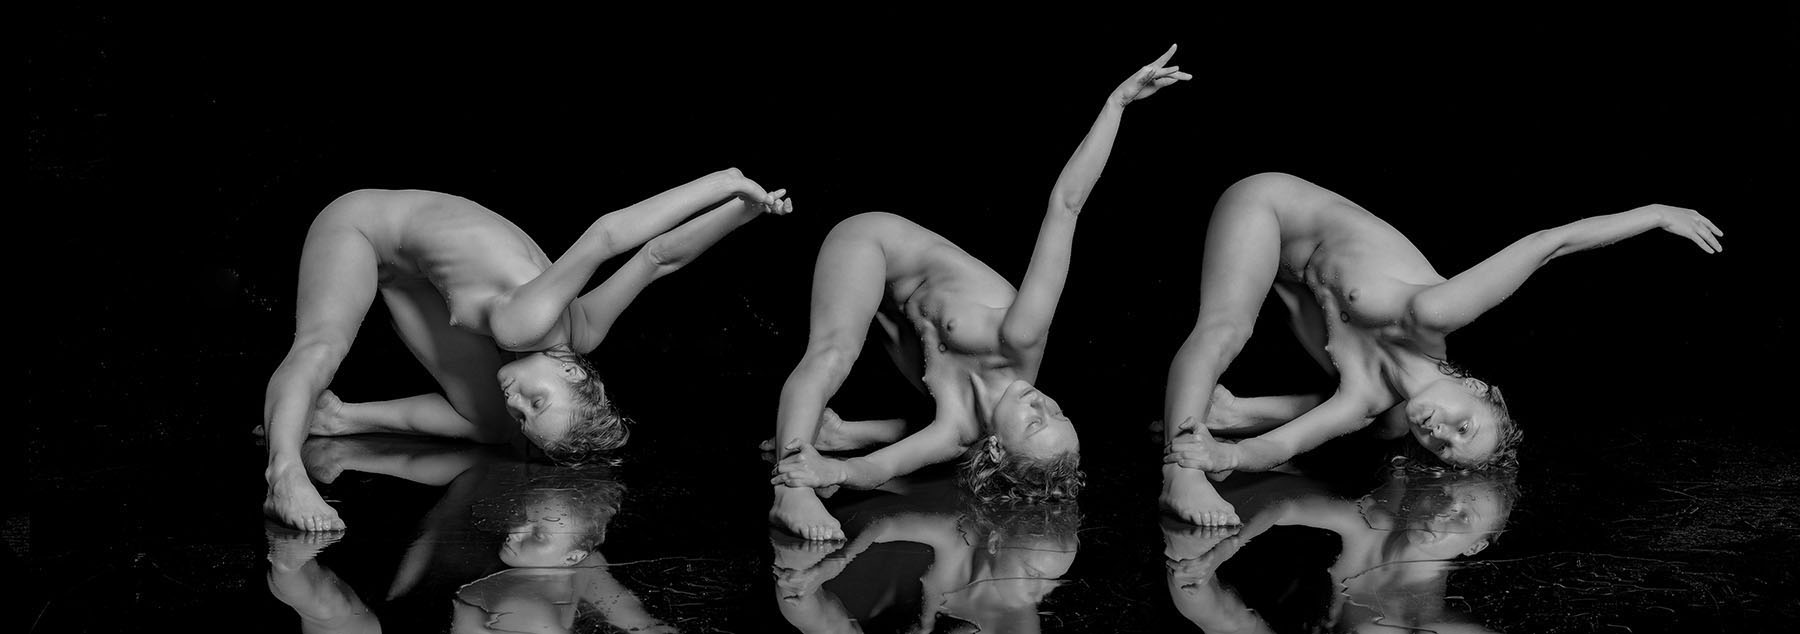 Wet Ballet - Dana Dancer. NoTextBook No. 3. Actor: Dana. Artist: Jay Gee. Production: Erotic Art Photography EAP.